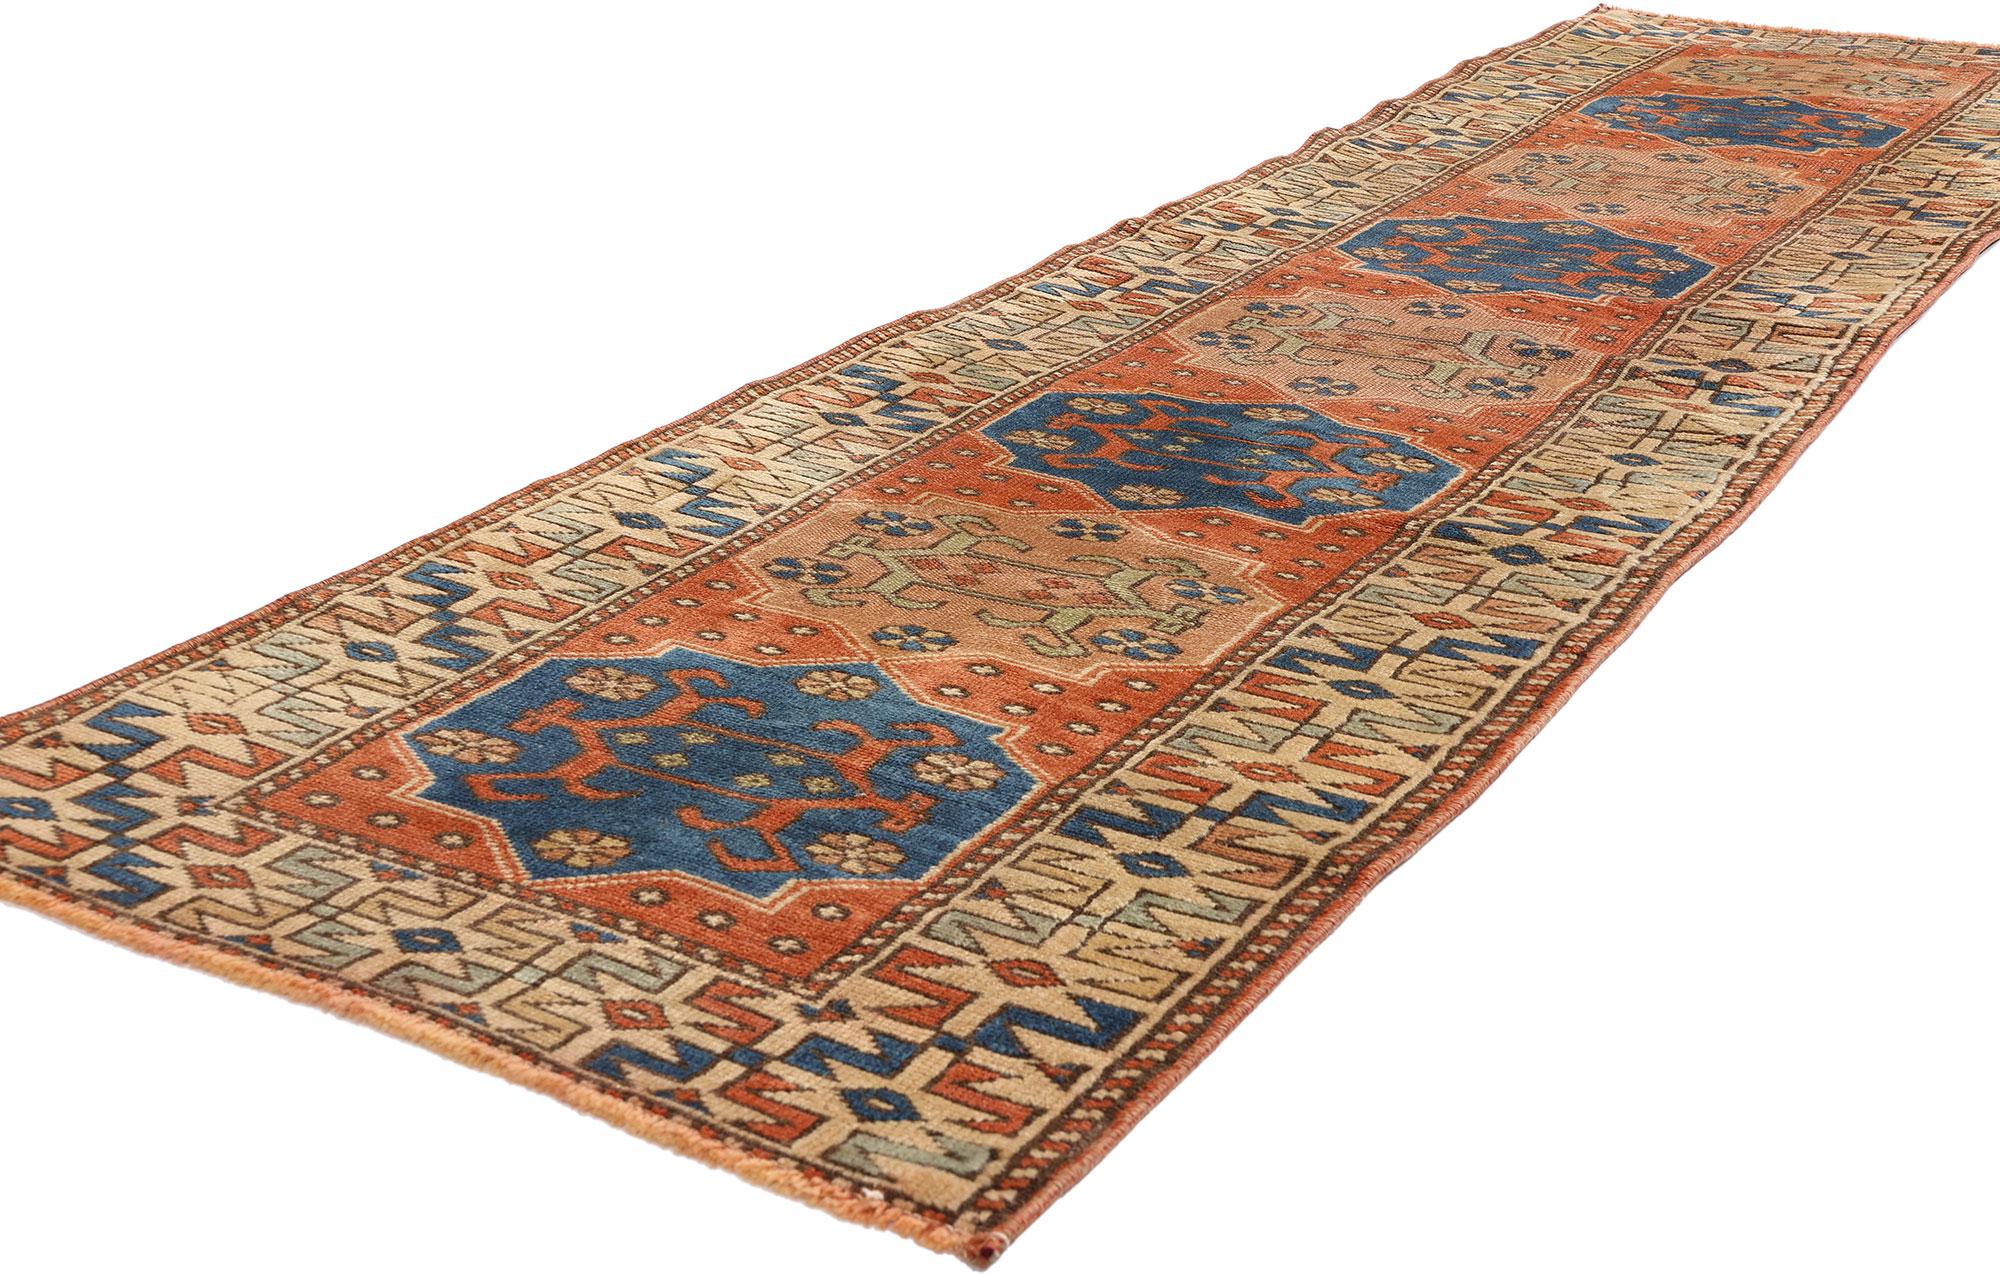 53943 Tapis persan vintage Hamadan Runner, 02'01 x 08'05. Les tapis persans Hamadan sont des tapis méticuleusement tissés à la main, originaires de la région de Hamadan en Iran, réputés pour leur savoir-faire exceptionnel et leurs techniques